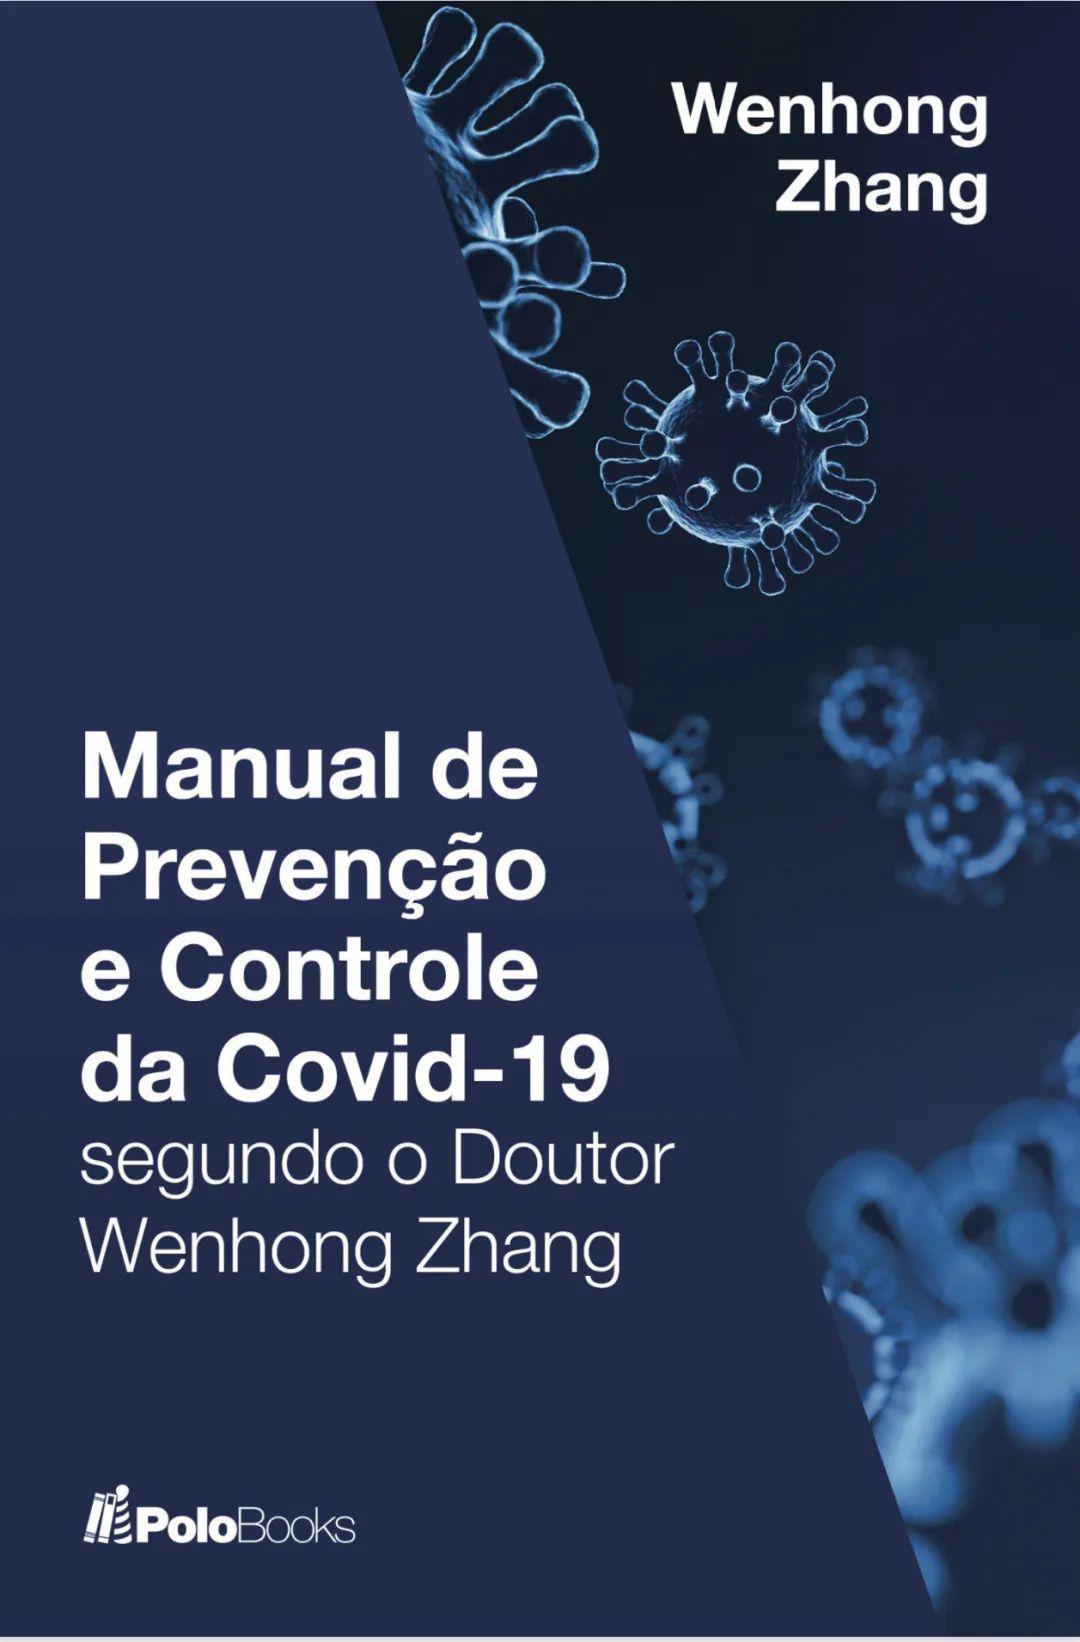 《张文宏教授支招防控新型冠状病毒》葡语版在巴西出版